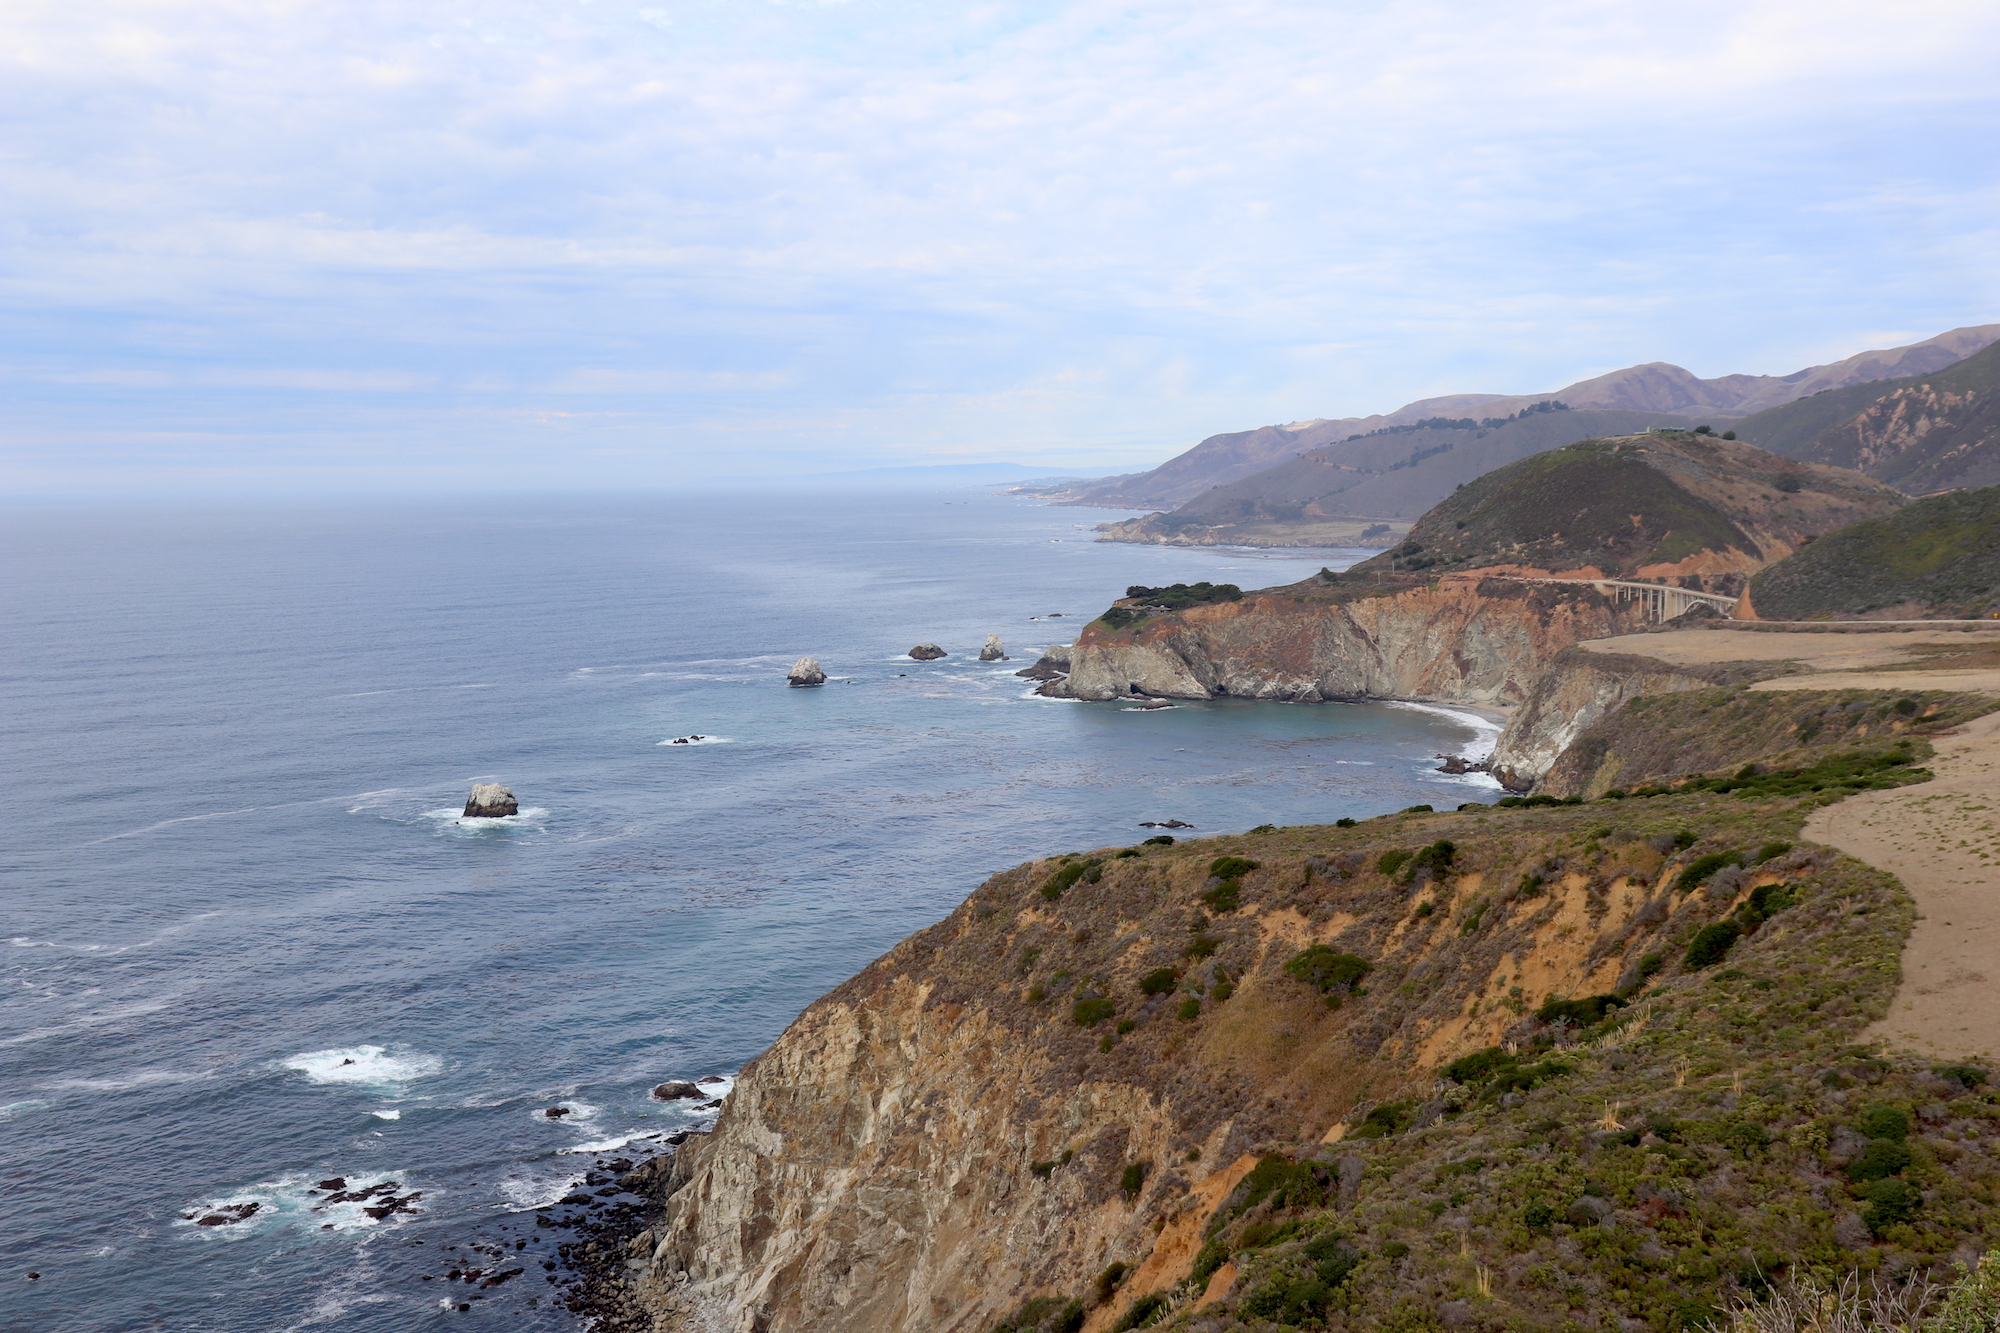 Coastline view, California State Route 1